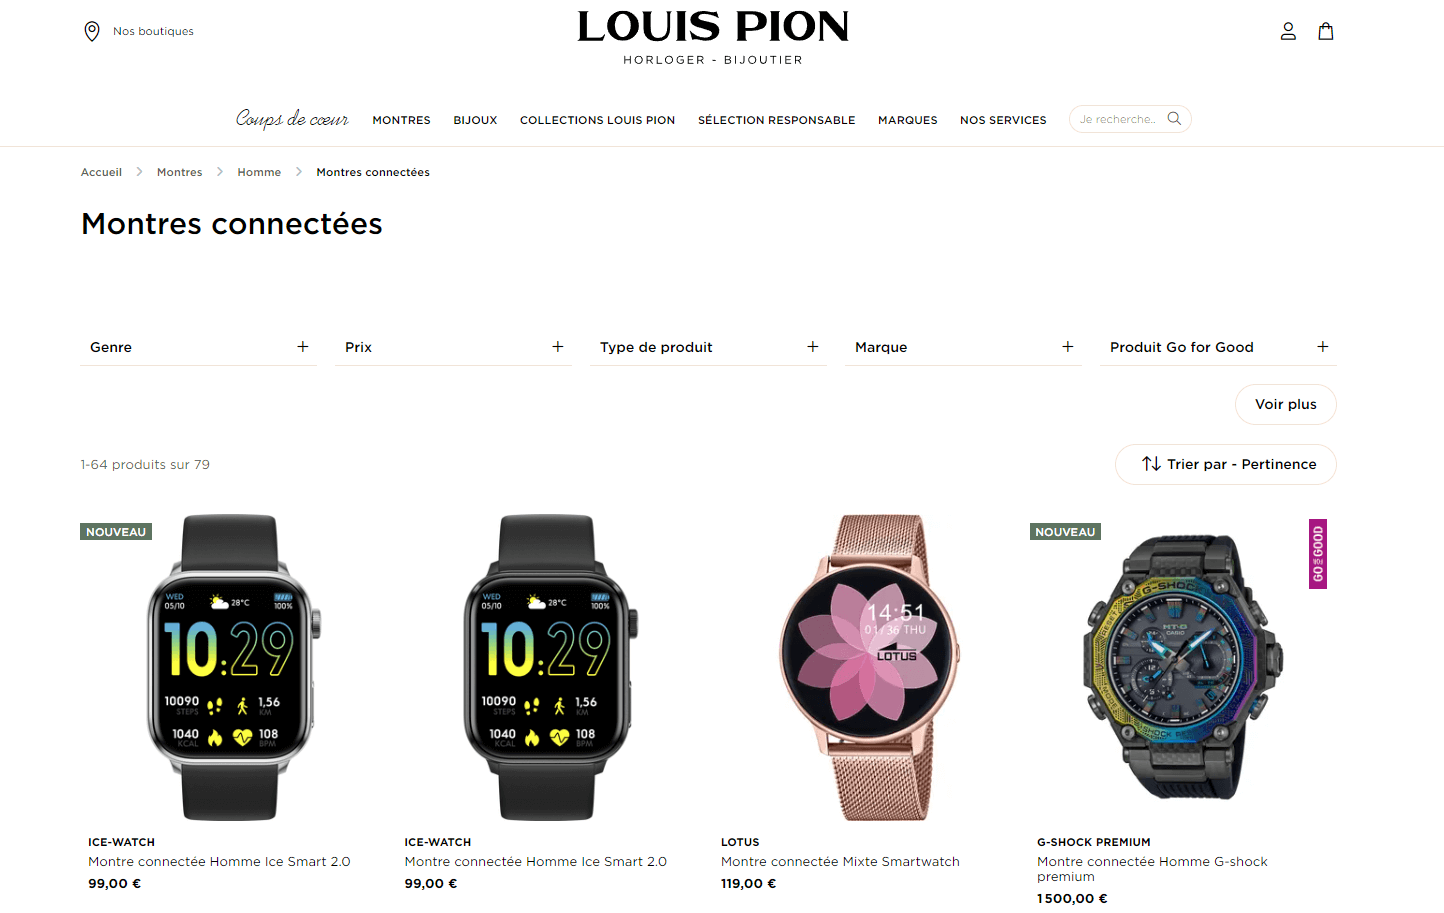 Horloger - bijoutier Louis Pion